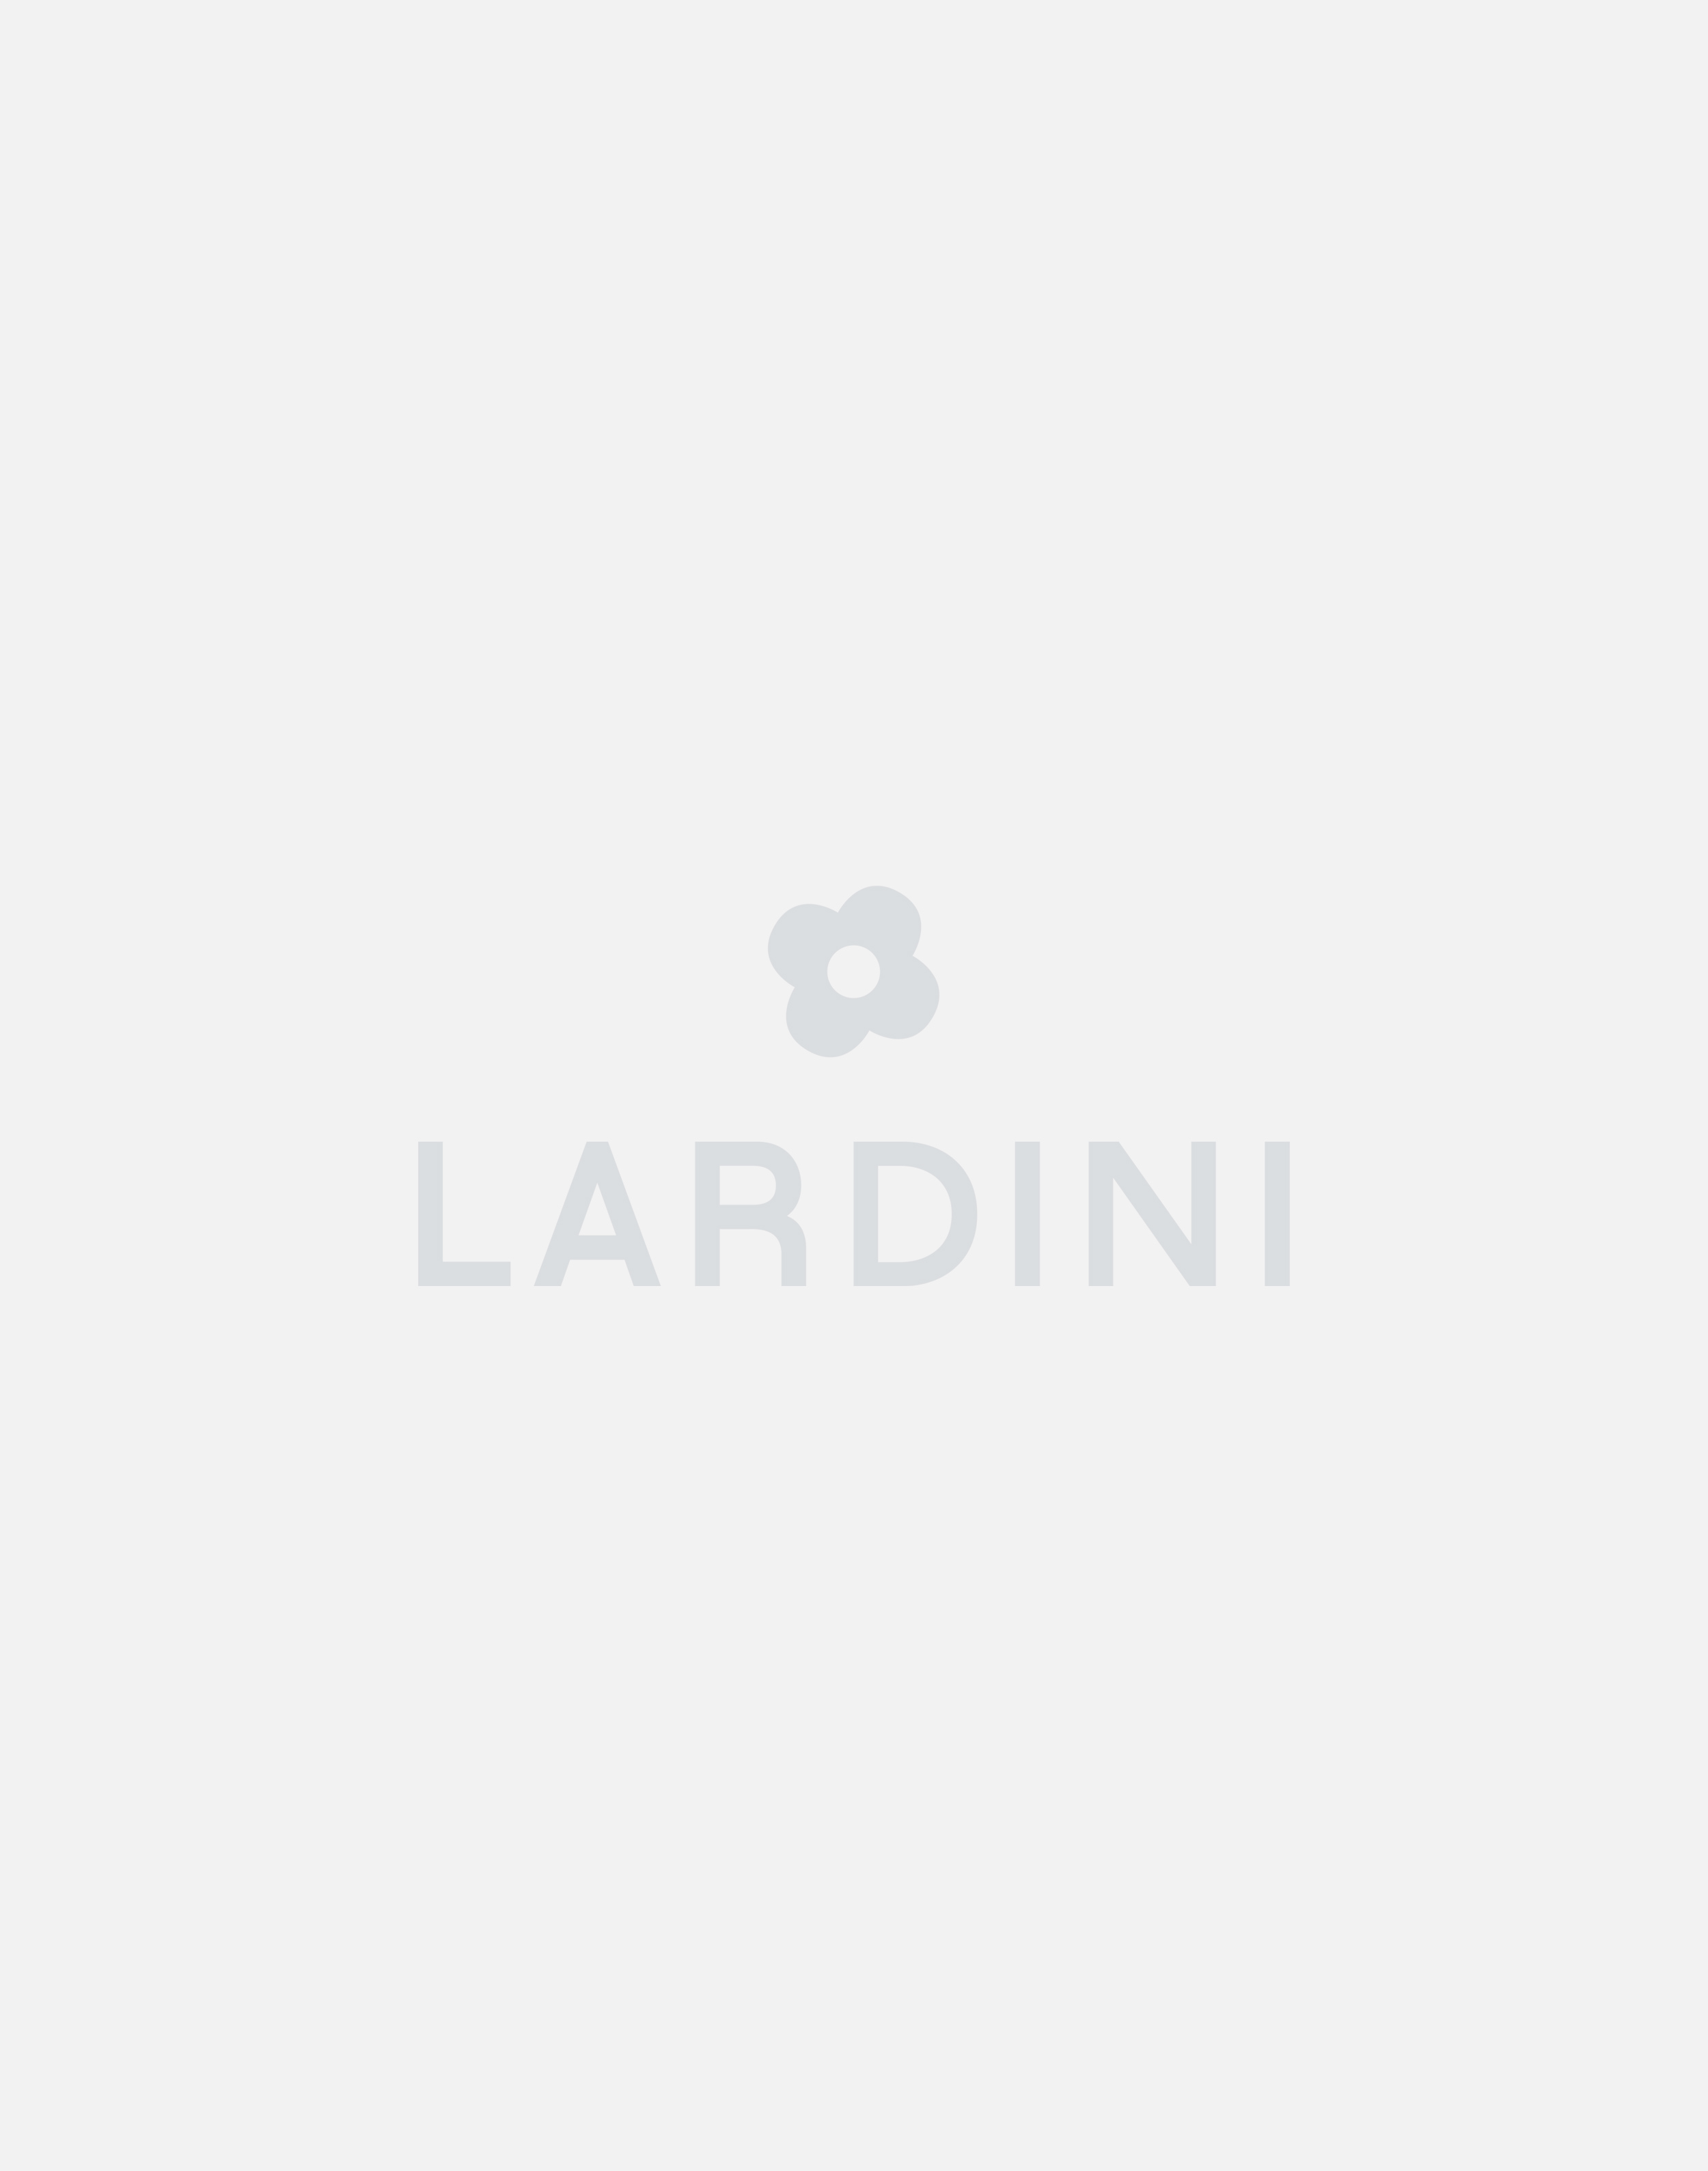 Cream trousers - Luigi Lardini capsule 3